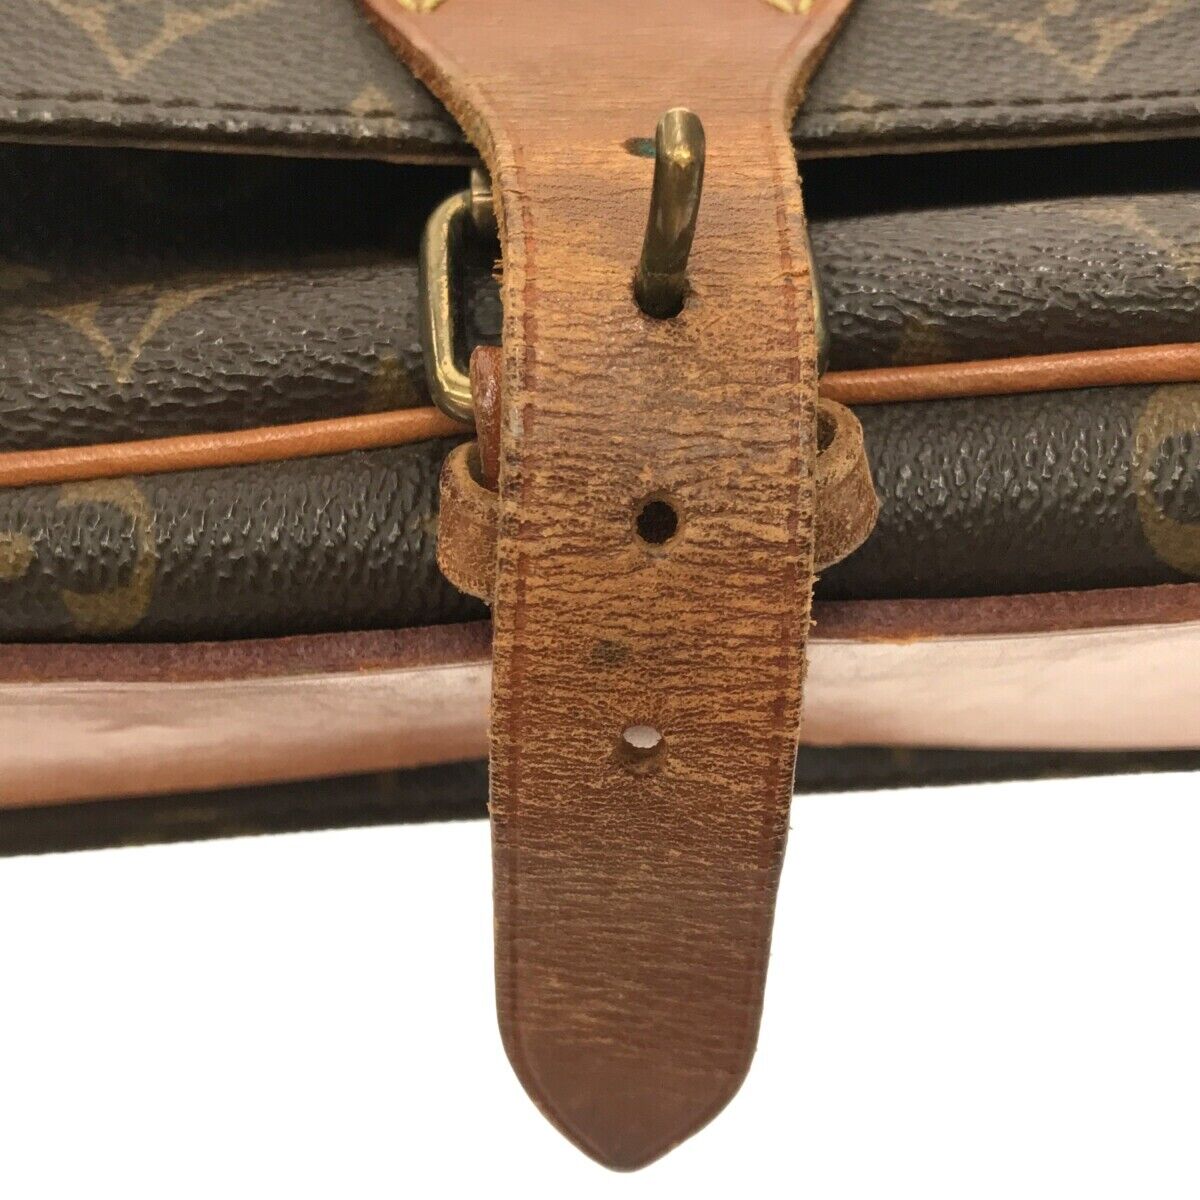 LOUIS VUITTON Cartouchiere GM Shoulder Bag Monogram Leather Brown